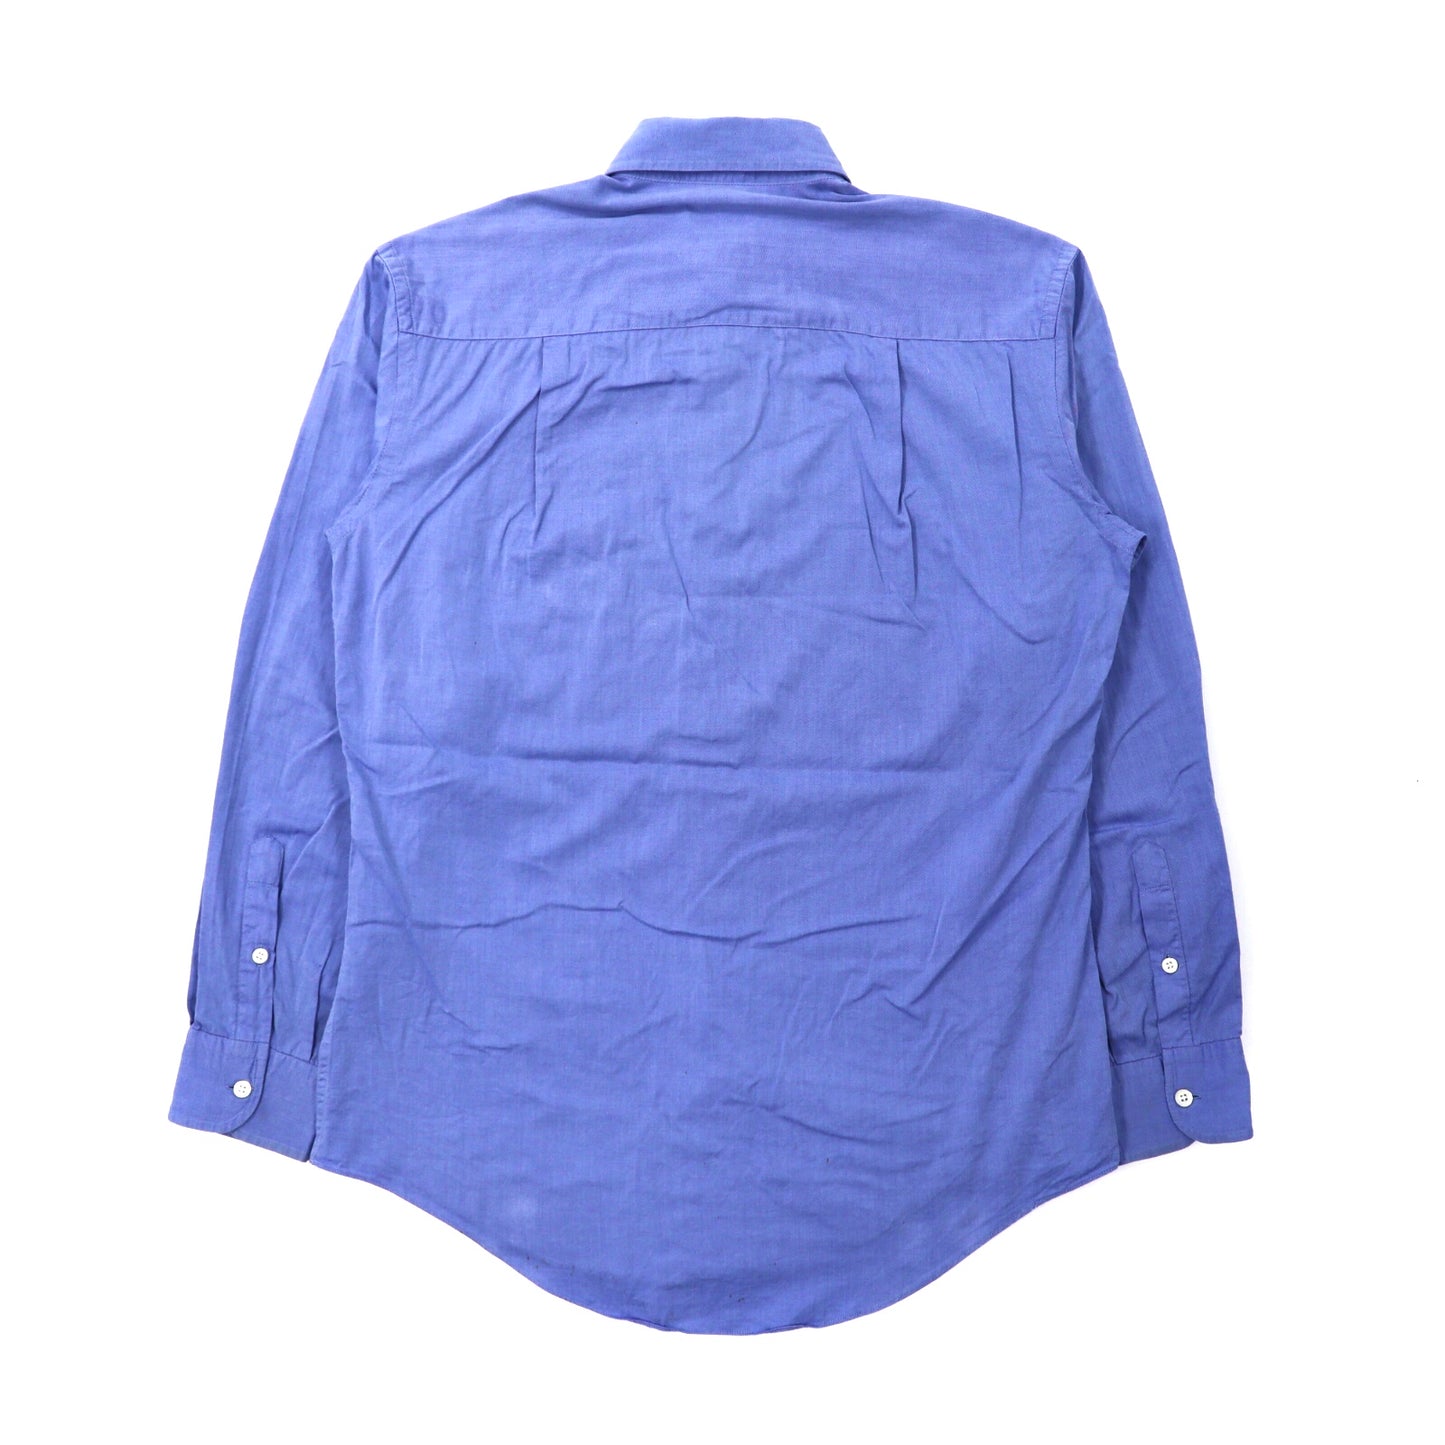 GUCCI ボタンダウンシャツ 38 ブルー コットン